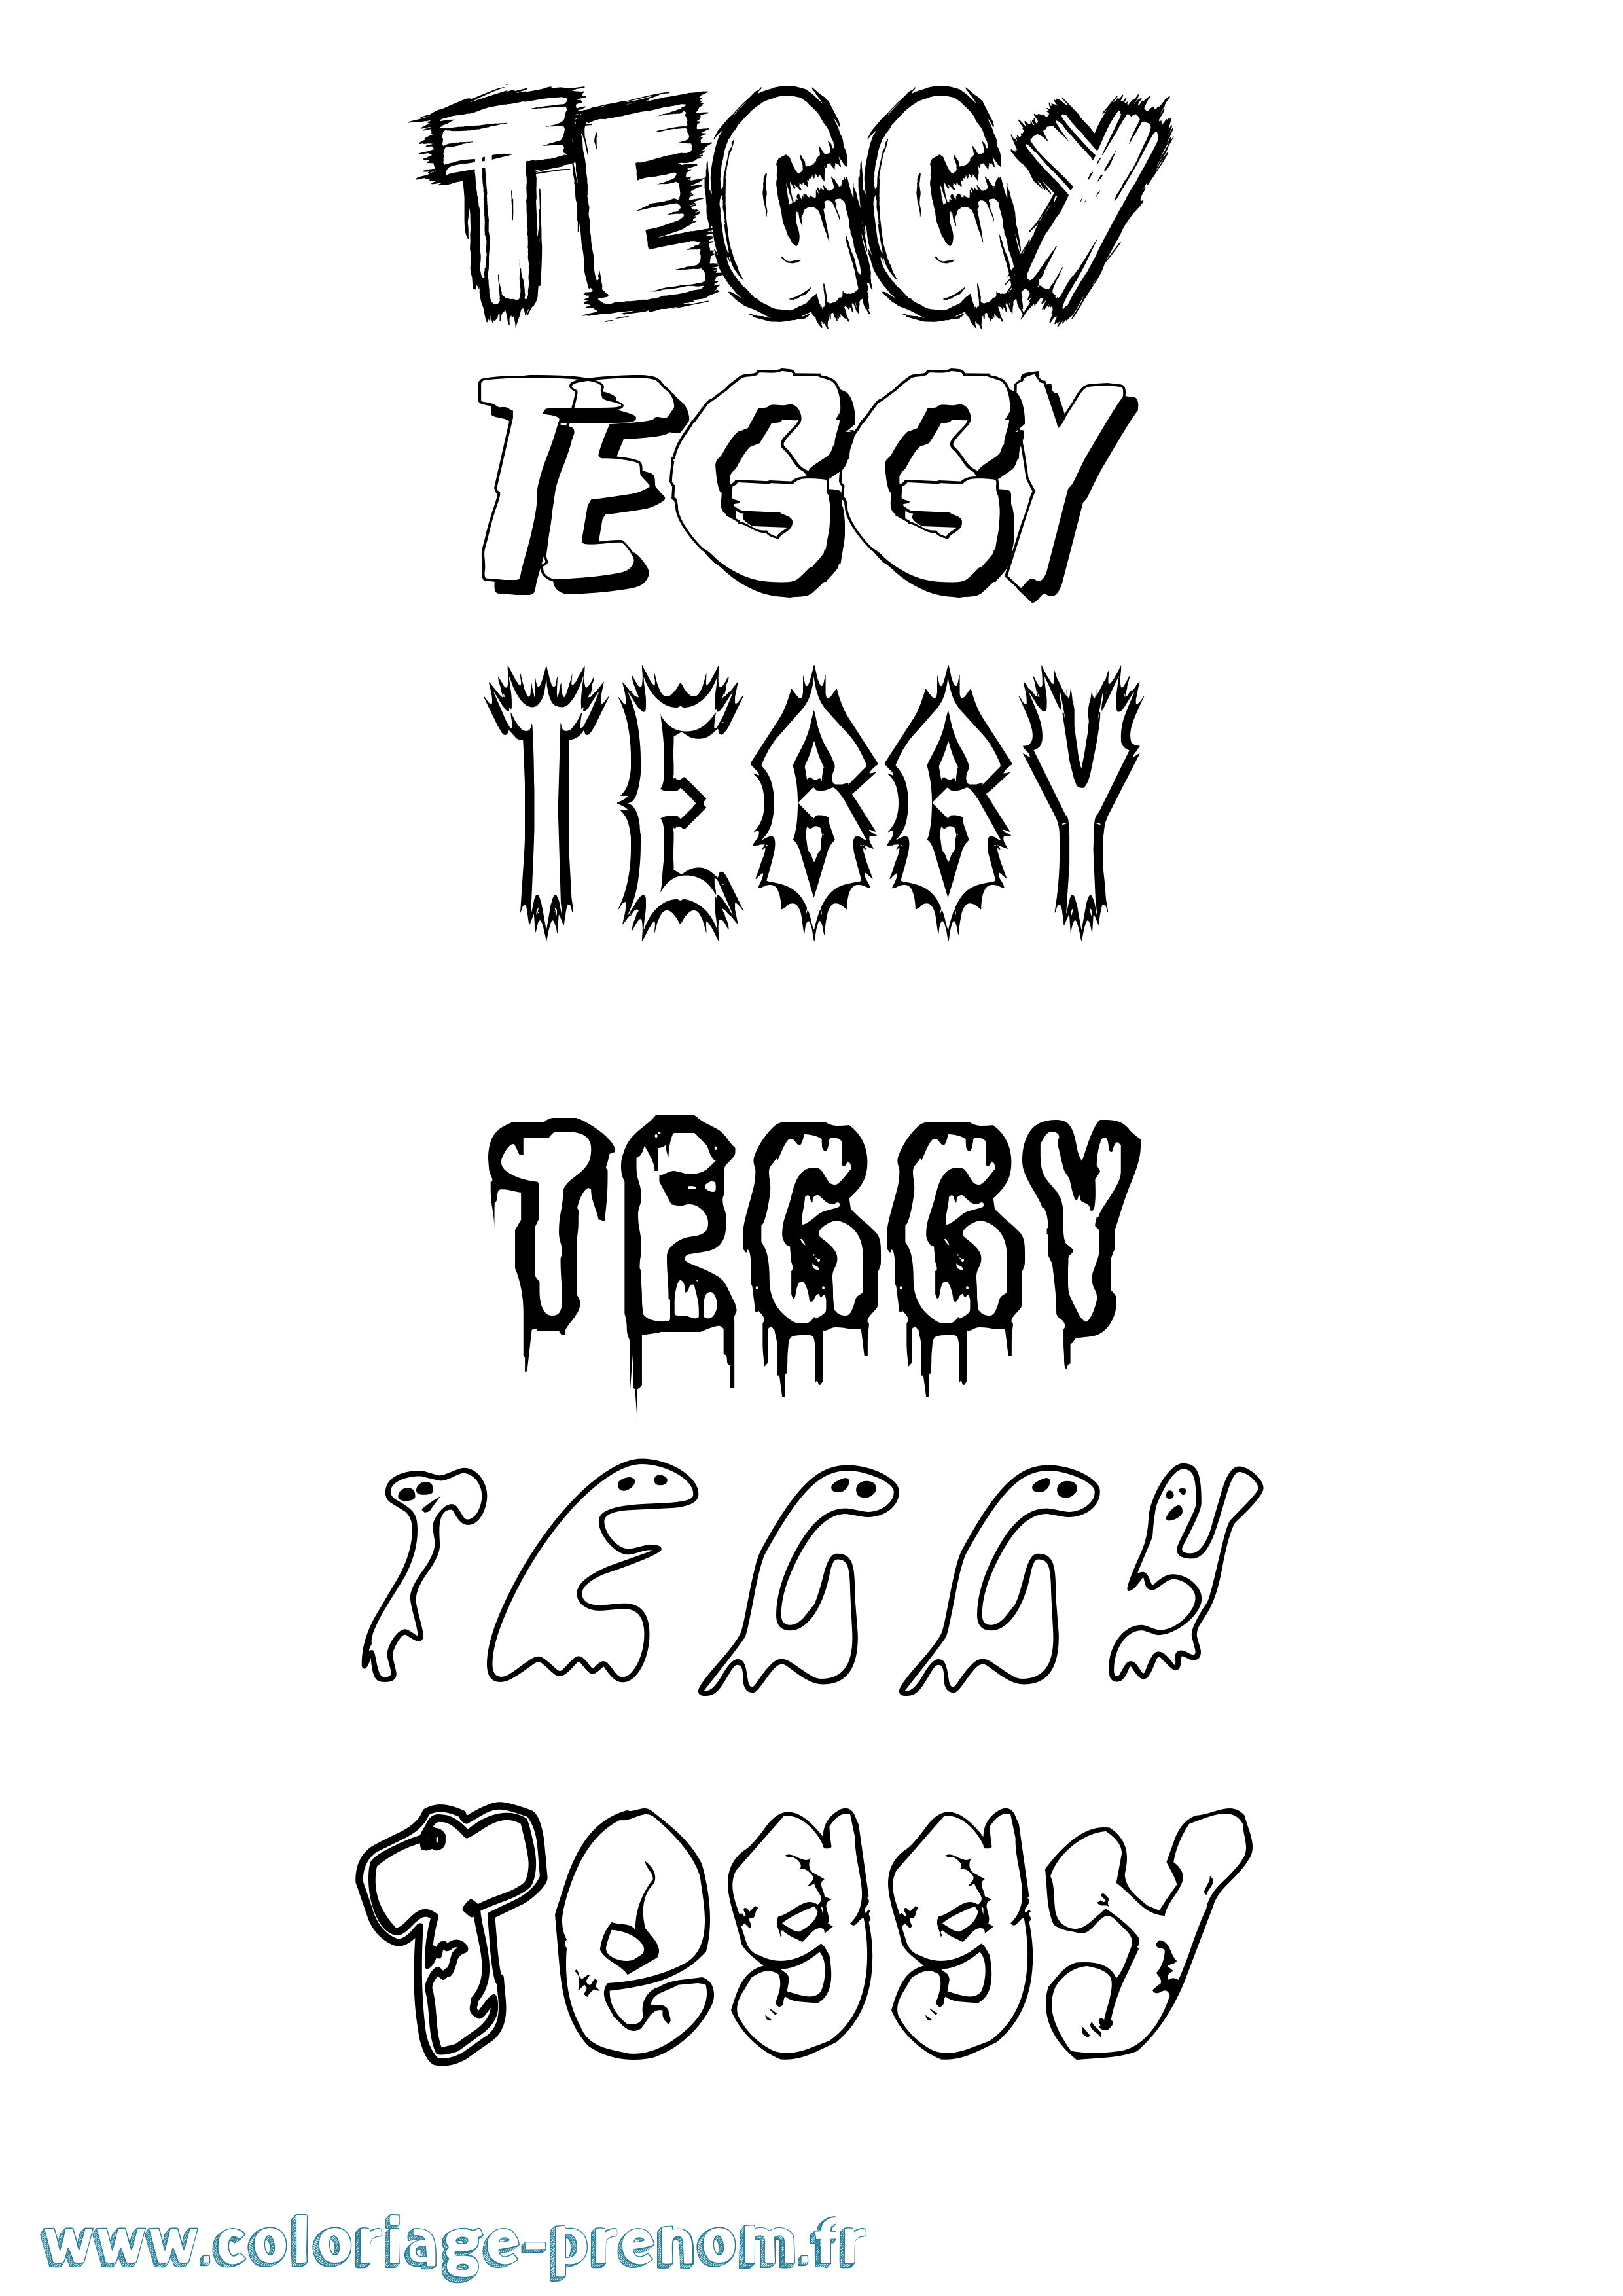 Coloriage prénom Teggy Frisson